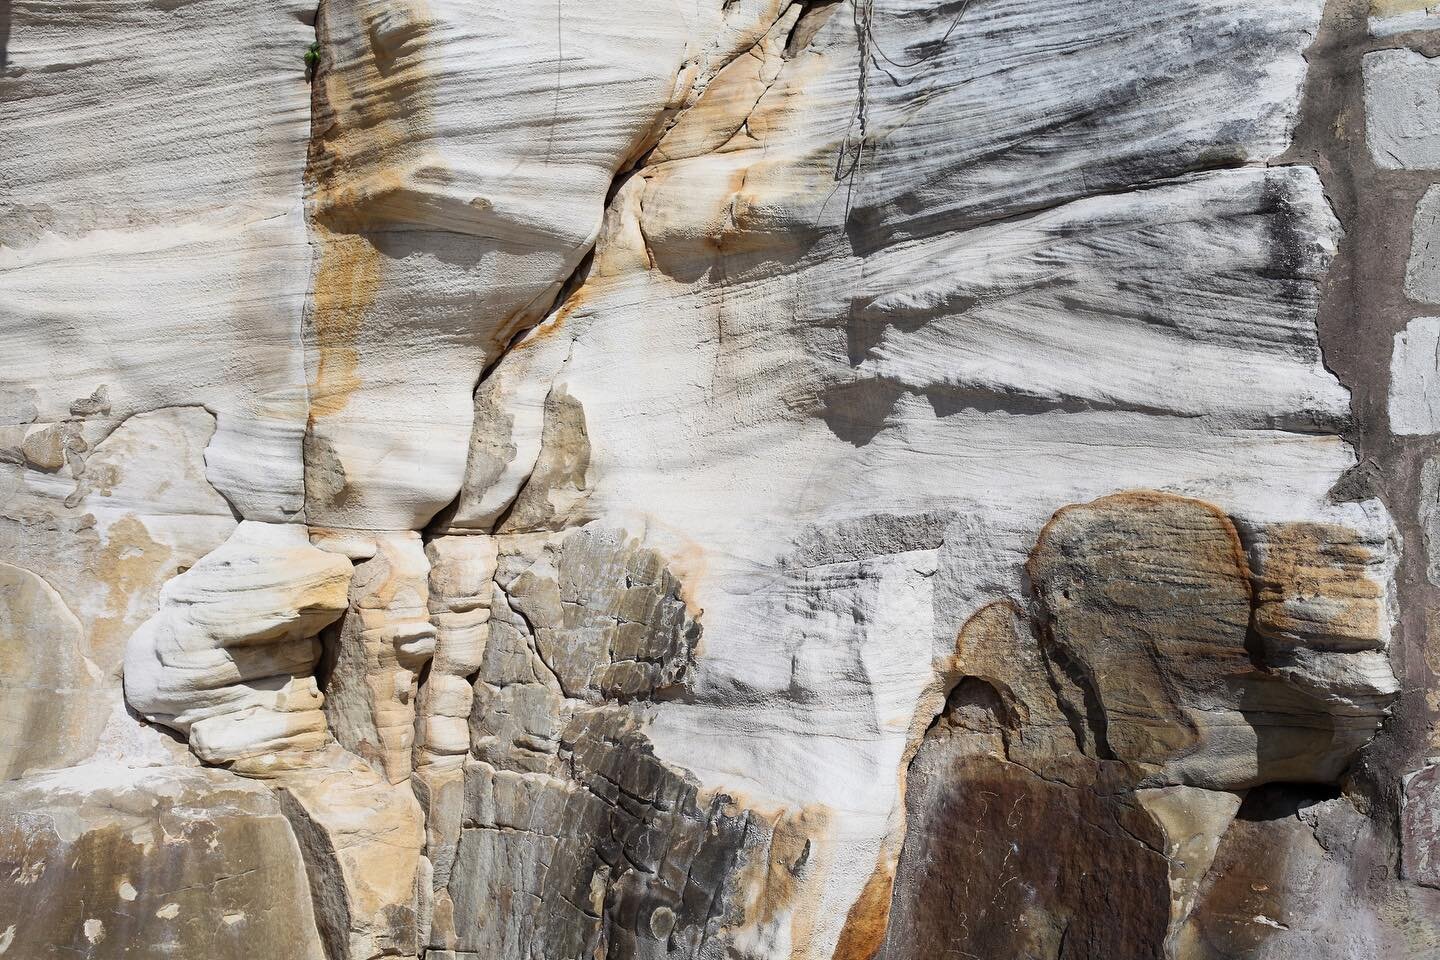 Cliffs of Northern Sydney, Australia, 2018 🇦🇺